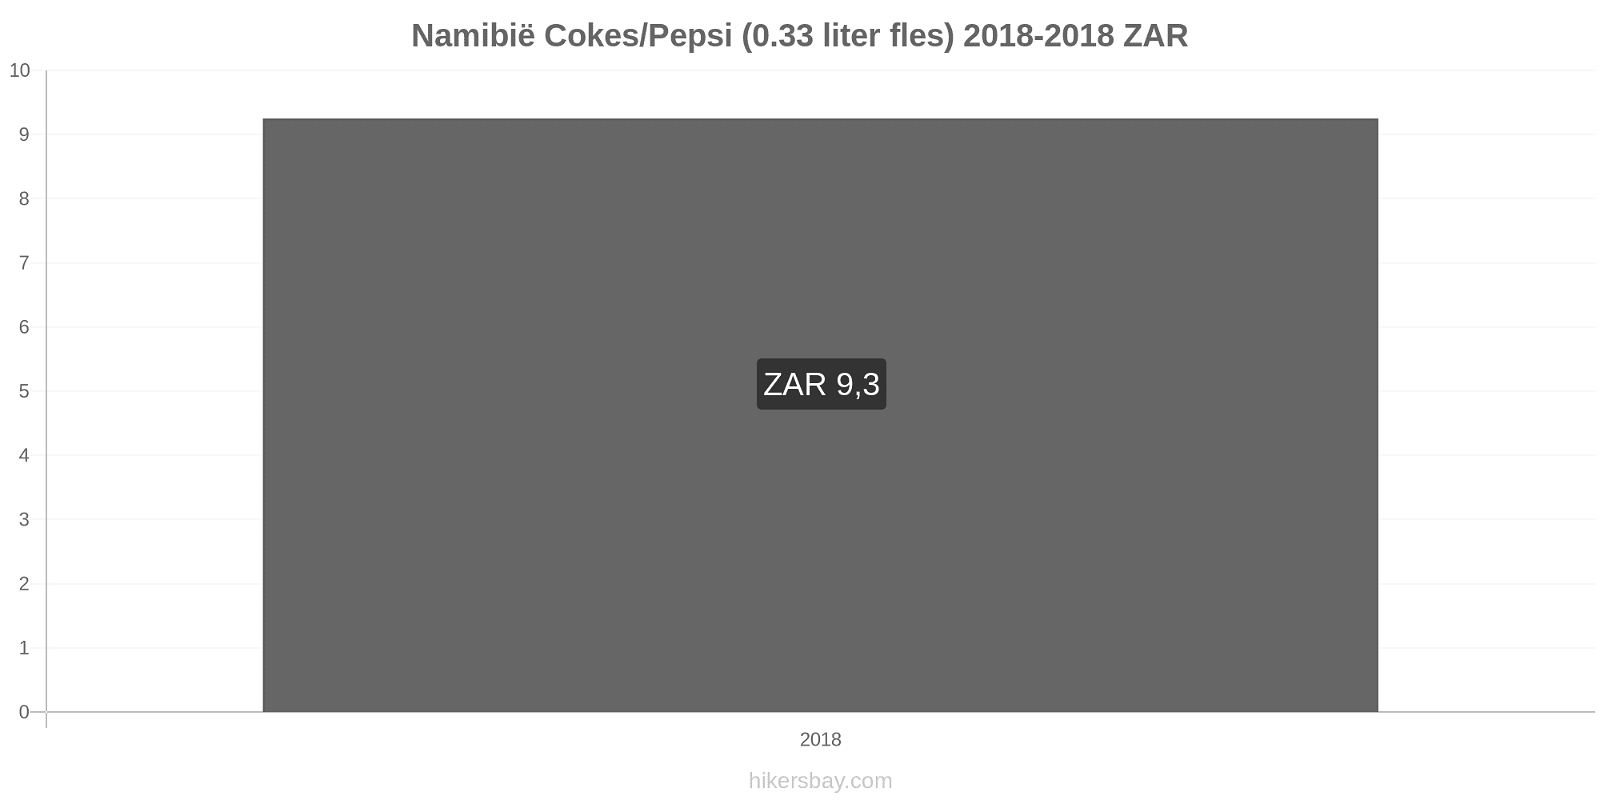 Namibië prijswijzigingen Coca-Cola/Pepsi (0.33 liter fles) hikersbay.com